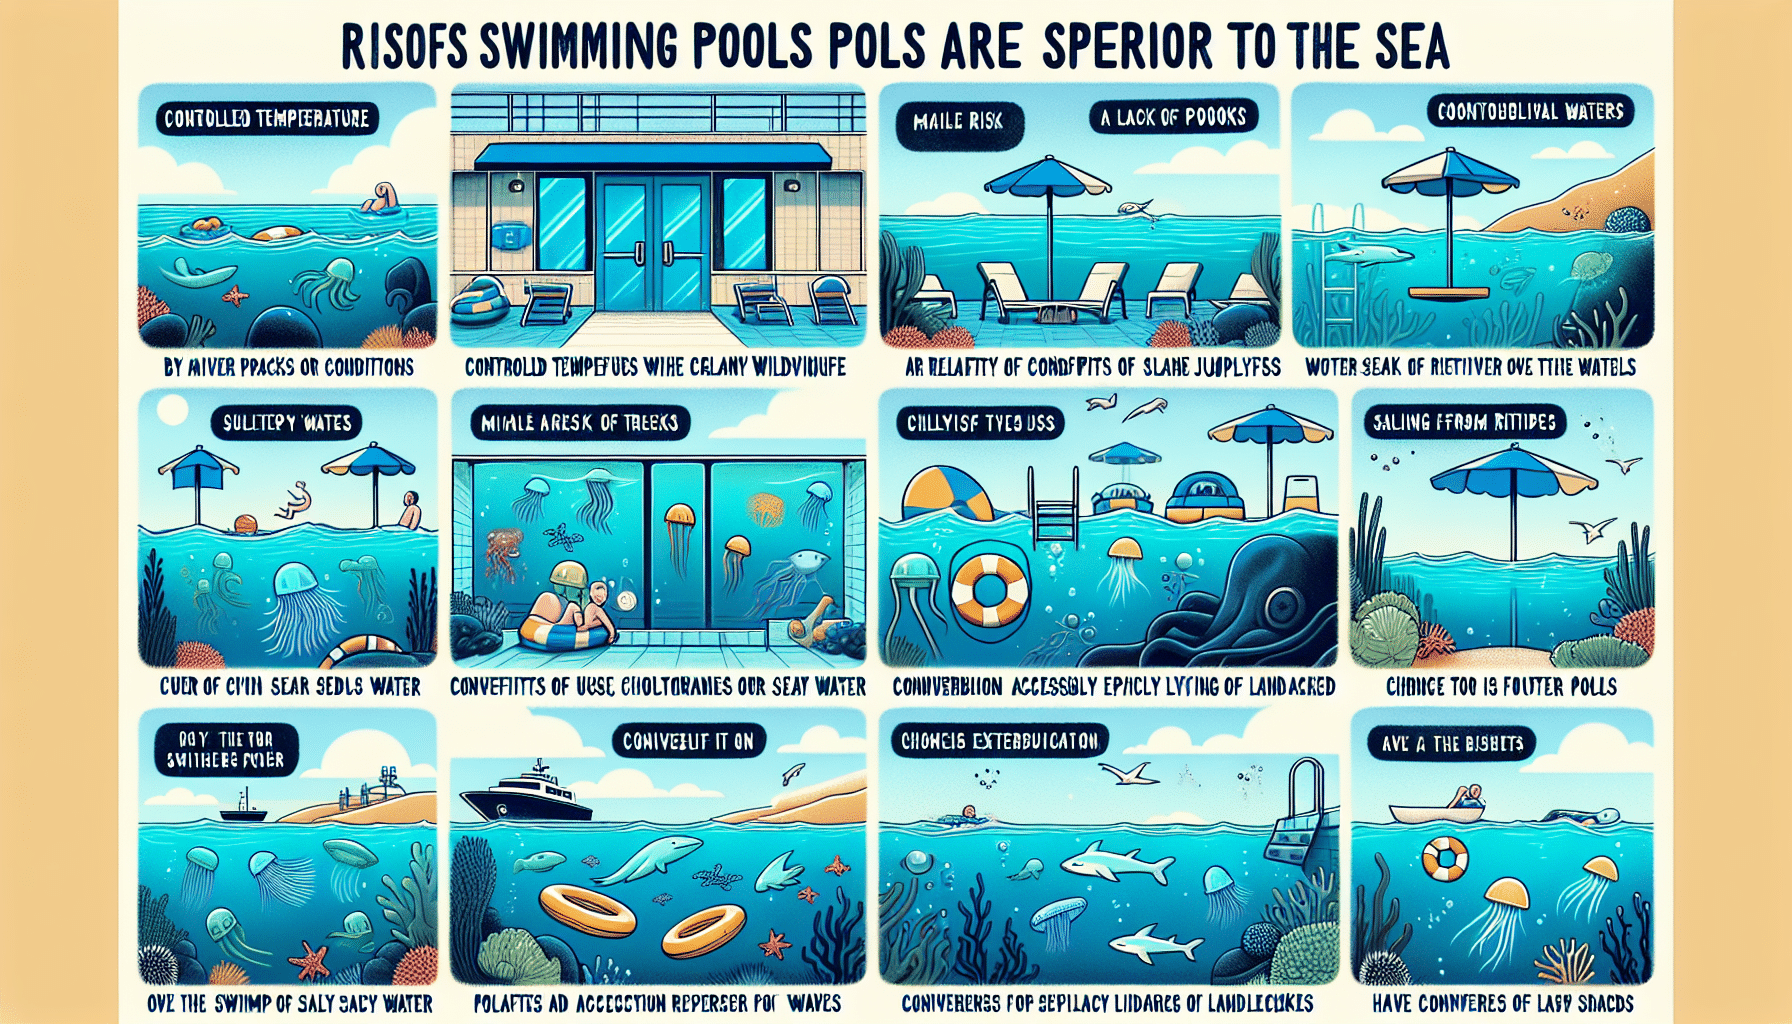 découvrez les 12 preuves indéniables que les piscines surpassent la mer ! peut-on vraiment ignorer l'évidence ?